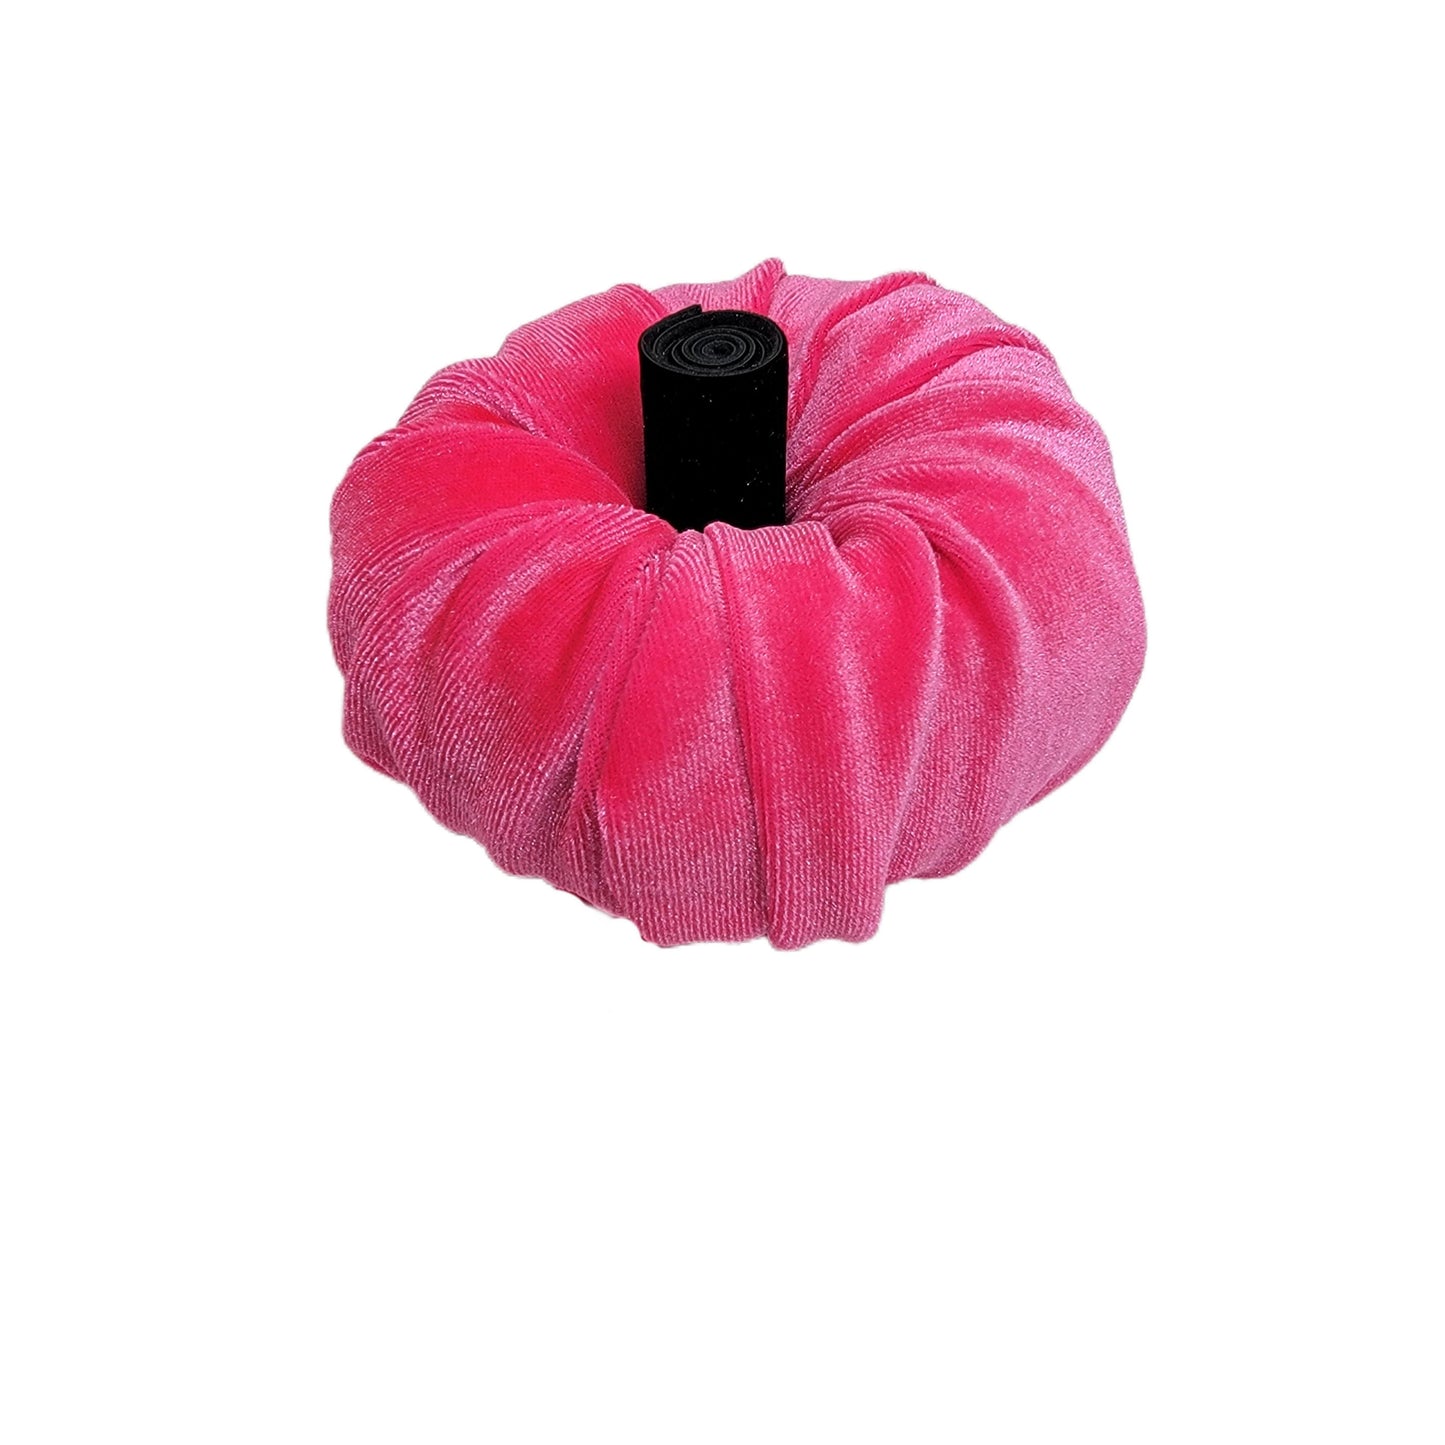 Velvet Fabric Pumpkin - Hot Pink